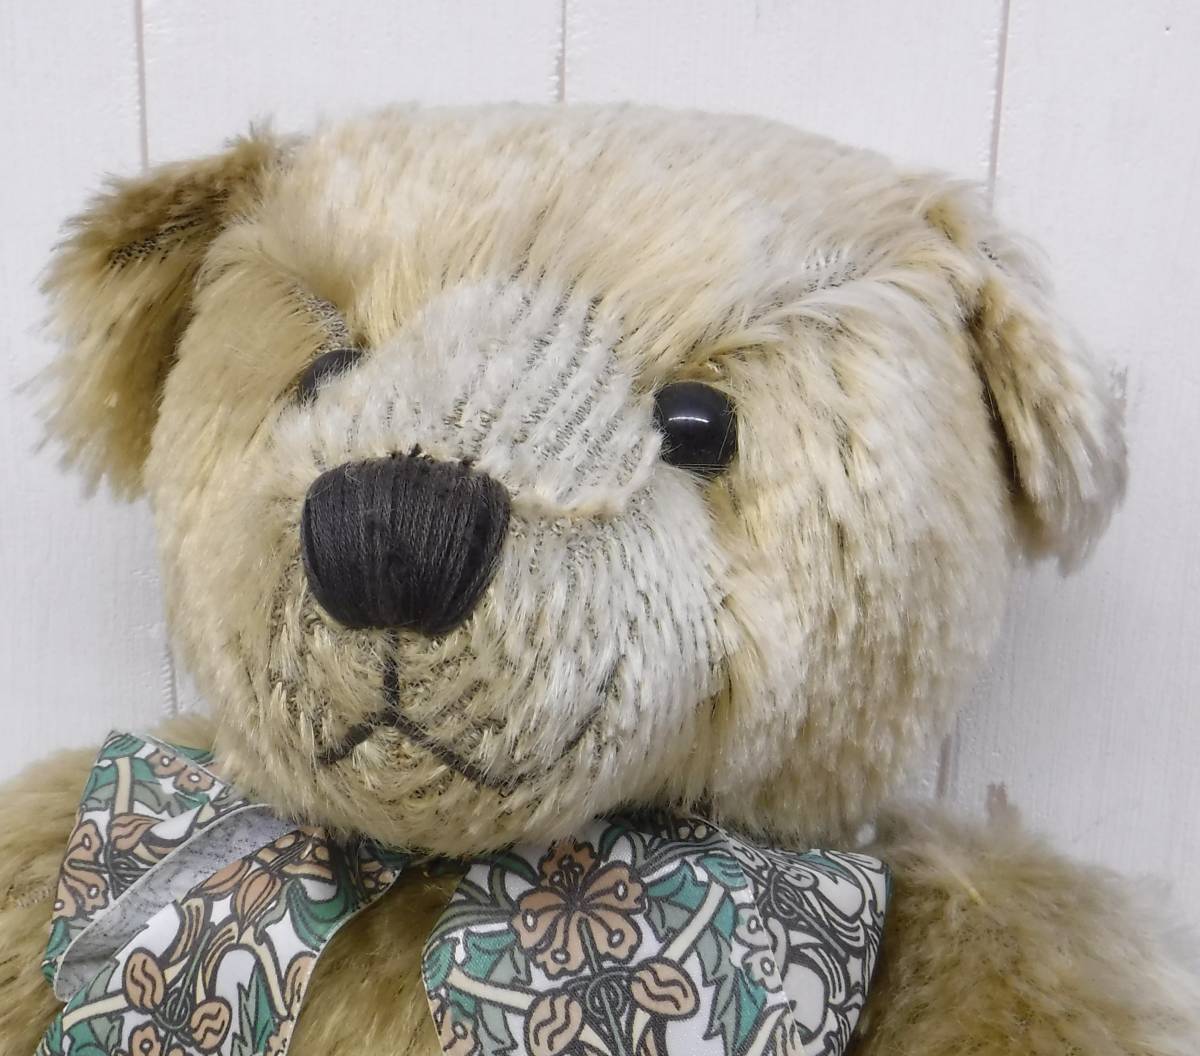  подлинная вещь * мягкая игрушка *Harrods Harrods * плюшевый мишка медведь * три .100 anniversary commemoration *36cm * коллекция античный куклы герои 